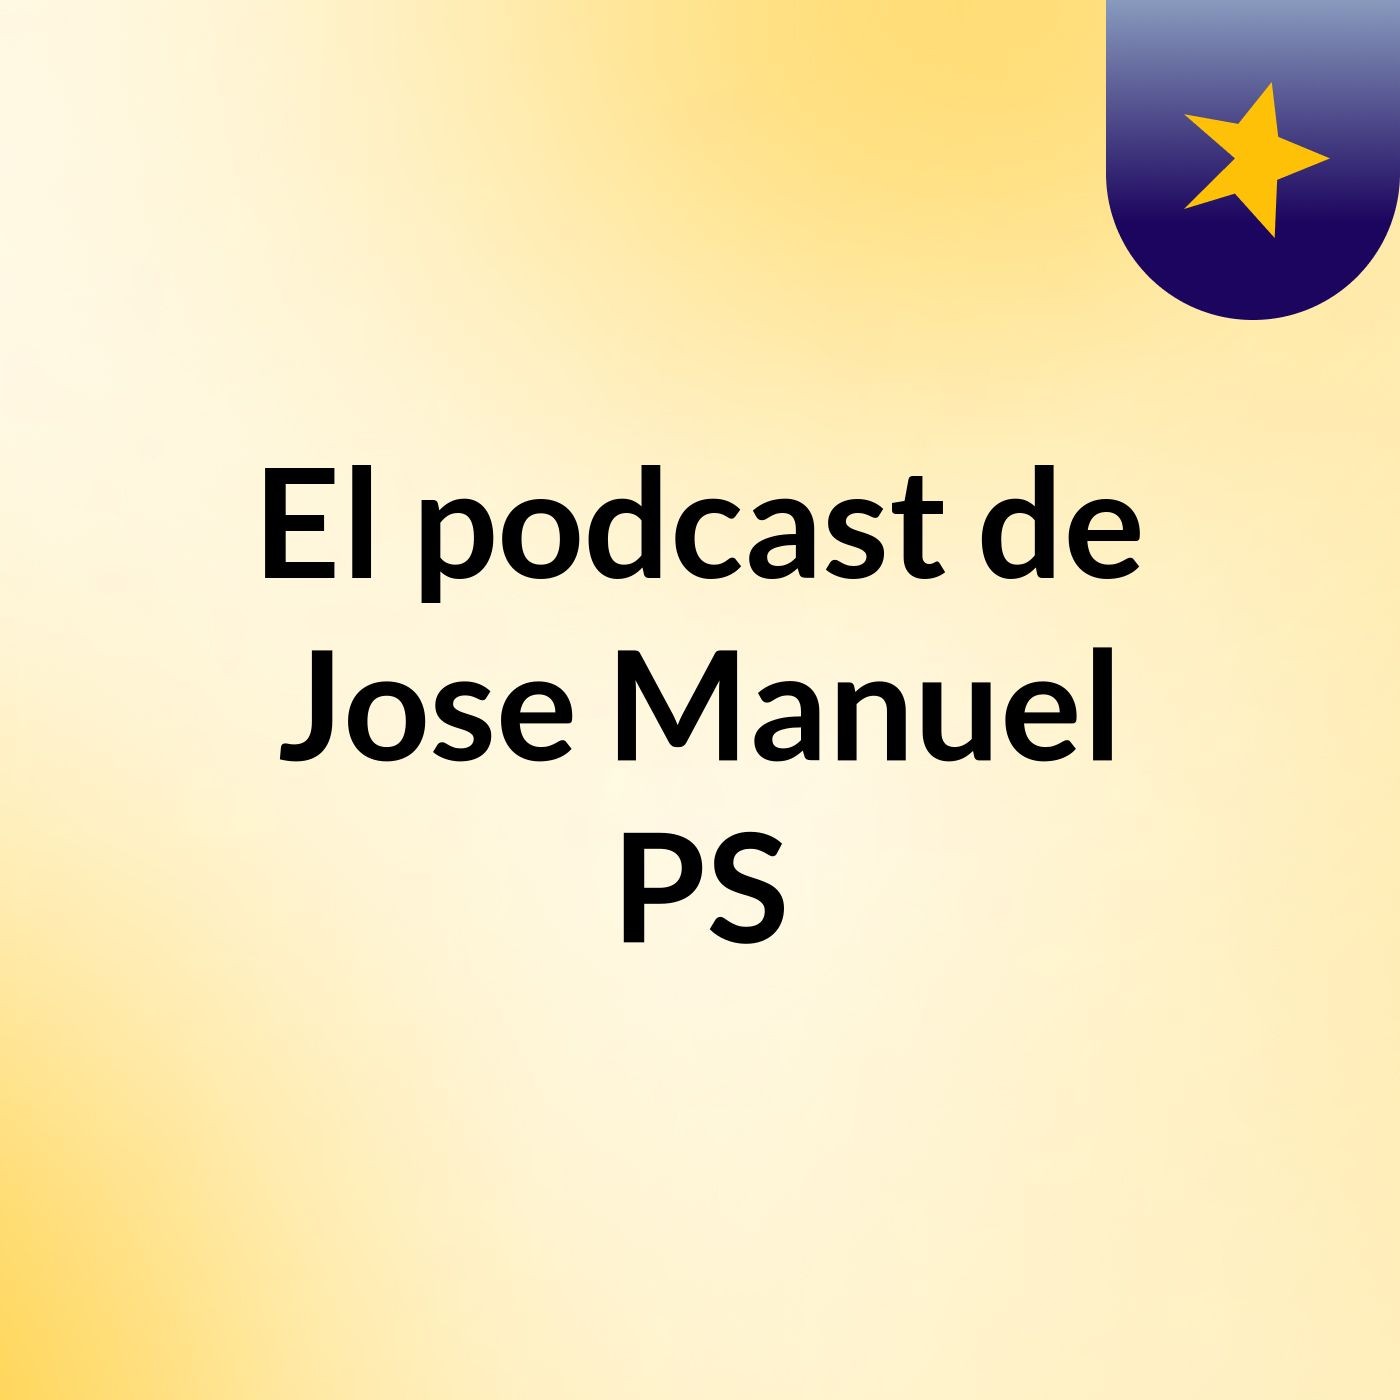 Episodio 2 - El podcast de Jose Manuel PS